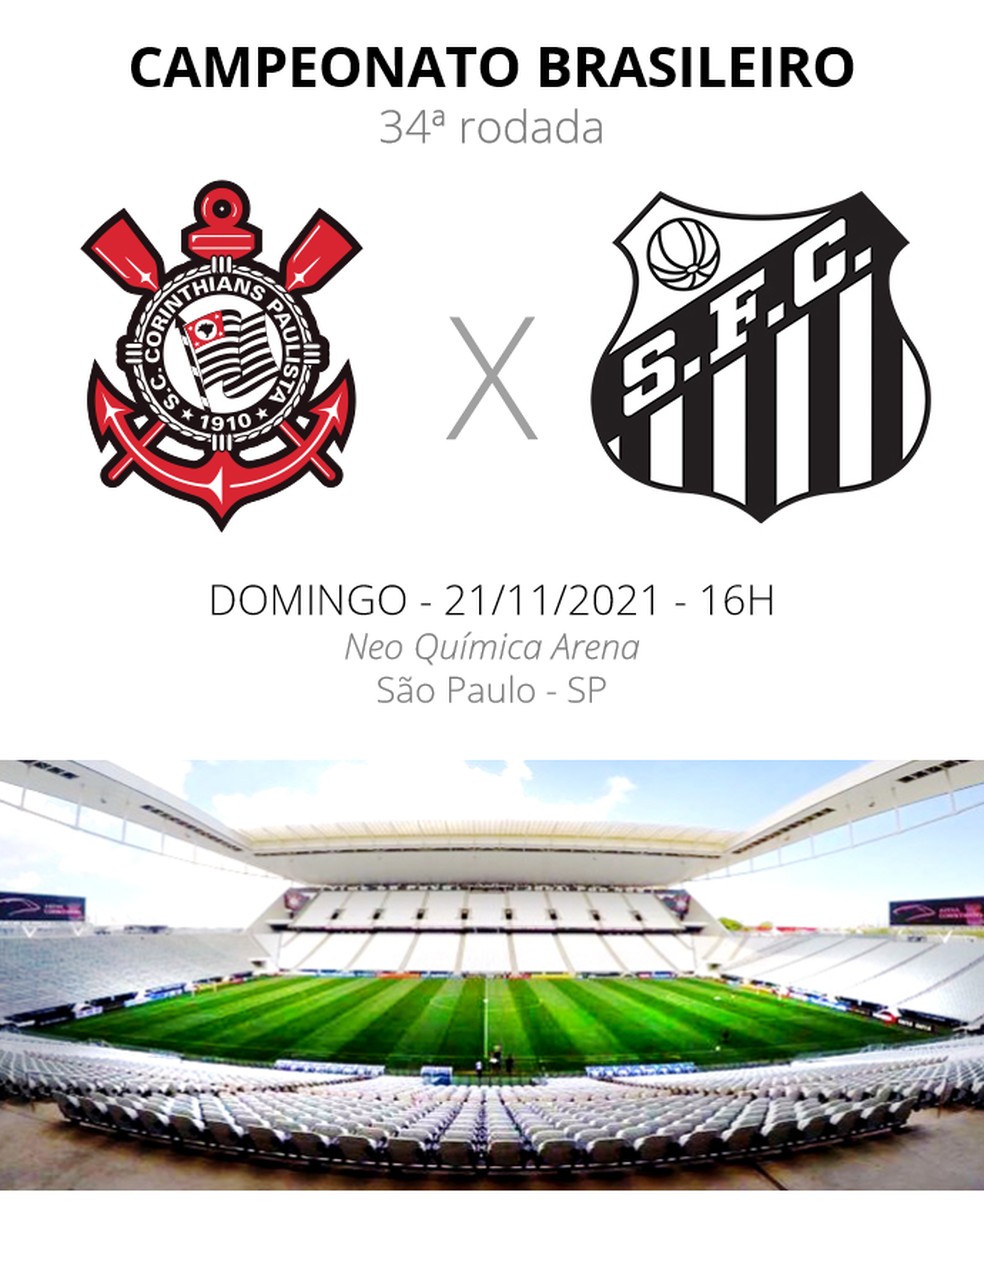 Onde assistir ao vivo o jogo Corinthians hoje, domingo, 19; veja horário -  Mundo e Negócio